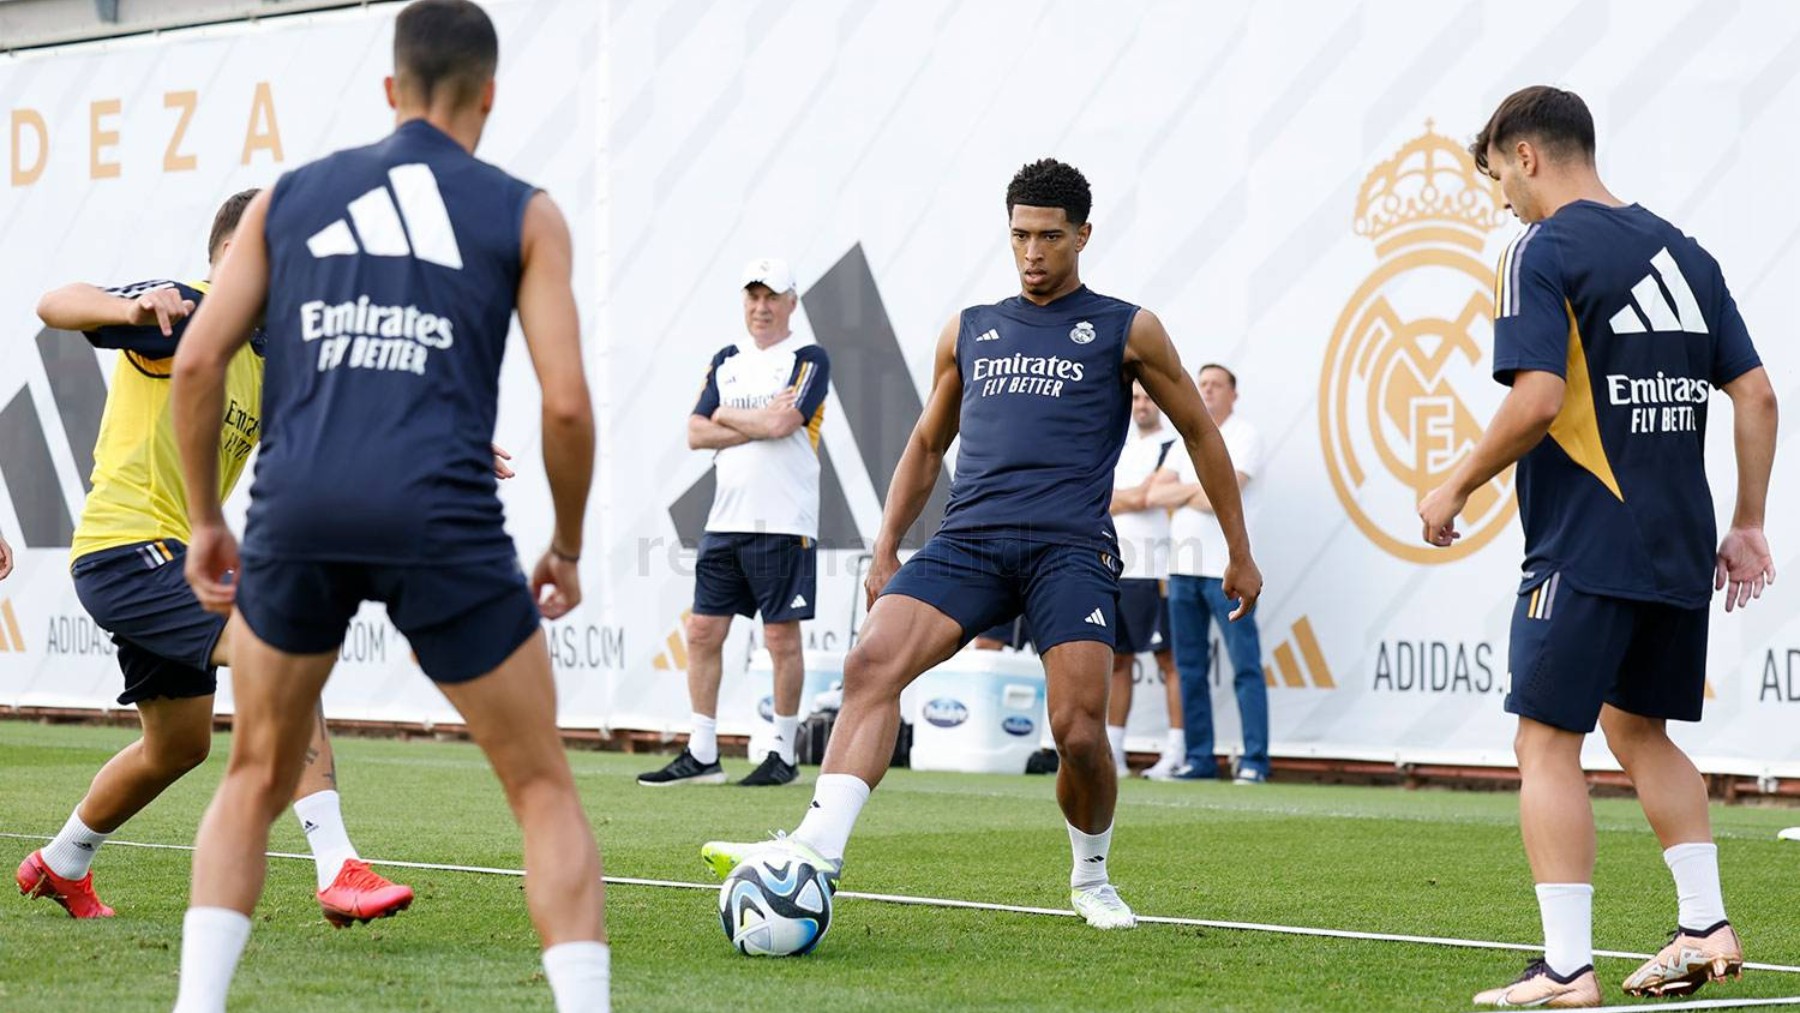 Intenso tercer entrenamiento de pretemporada del Real Madrid